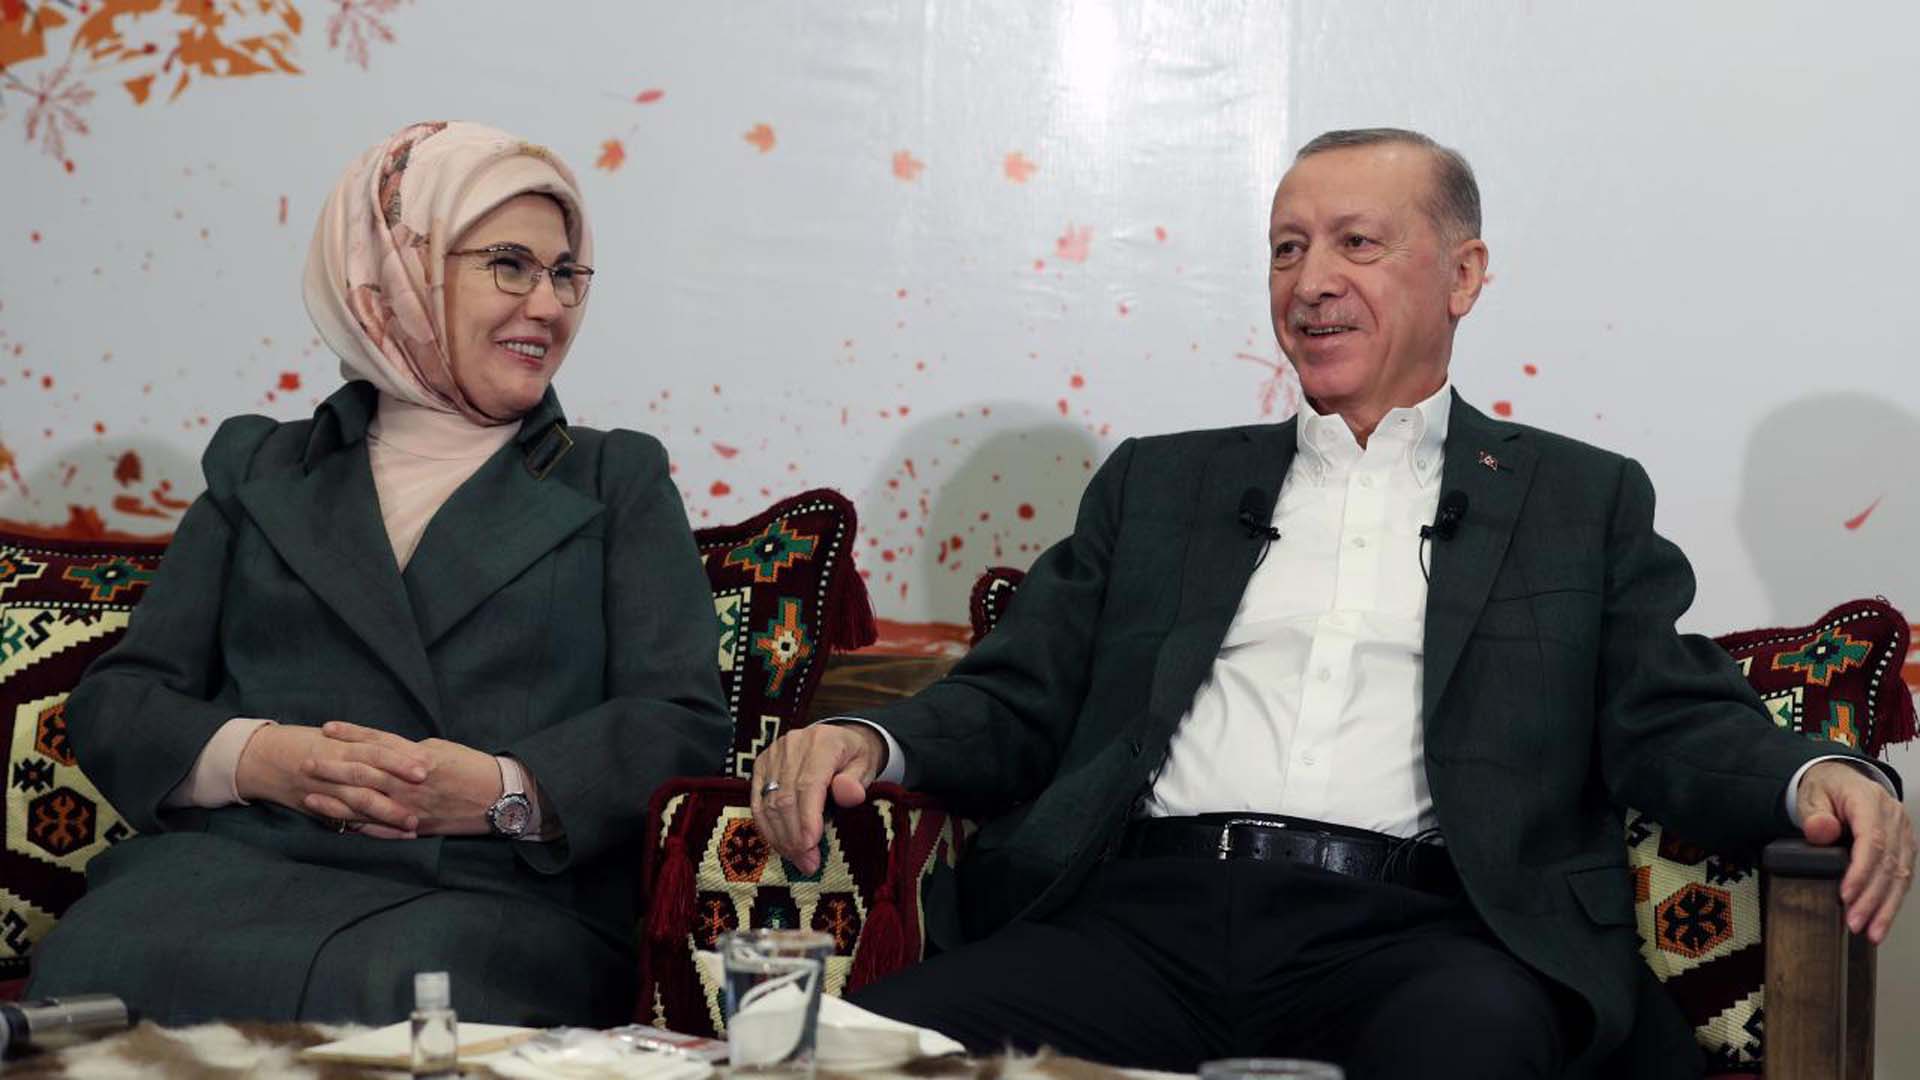 Testi pozitif çıkmıştı! Koronavirüse yakalanan Emine Erdoğan sağlık durumunu açıkladı